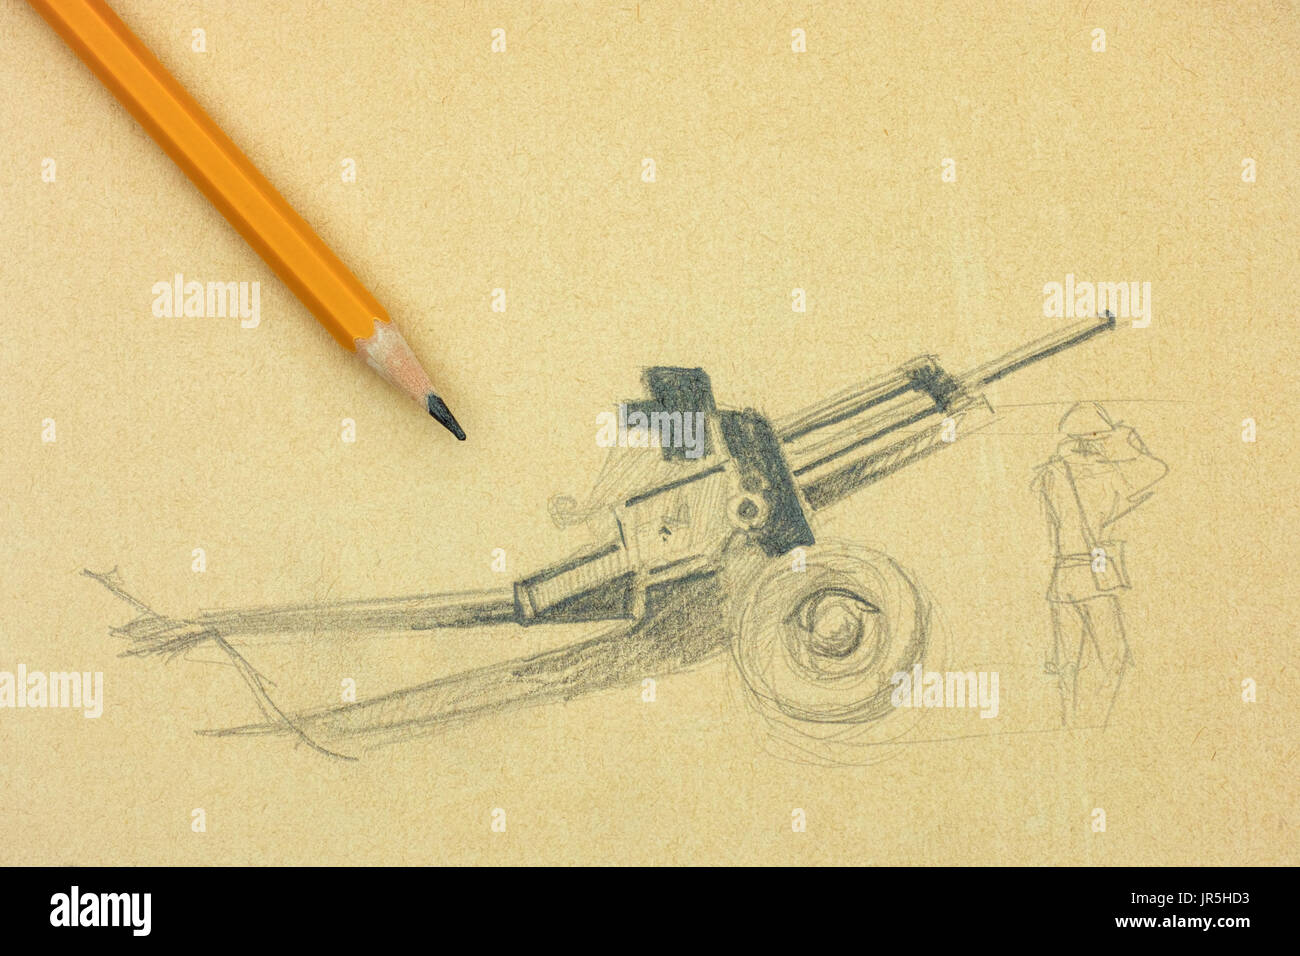 Cannon drawing immagini e fotografie stock ad alta risoluzione - Alamy